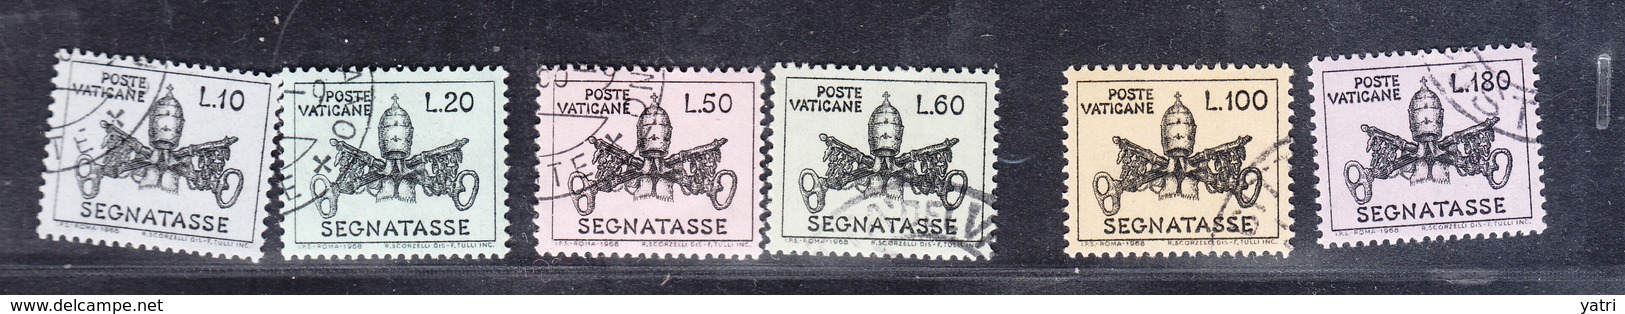 Vaticano 1968 - Segnatasse - Taxes